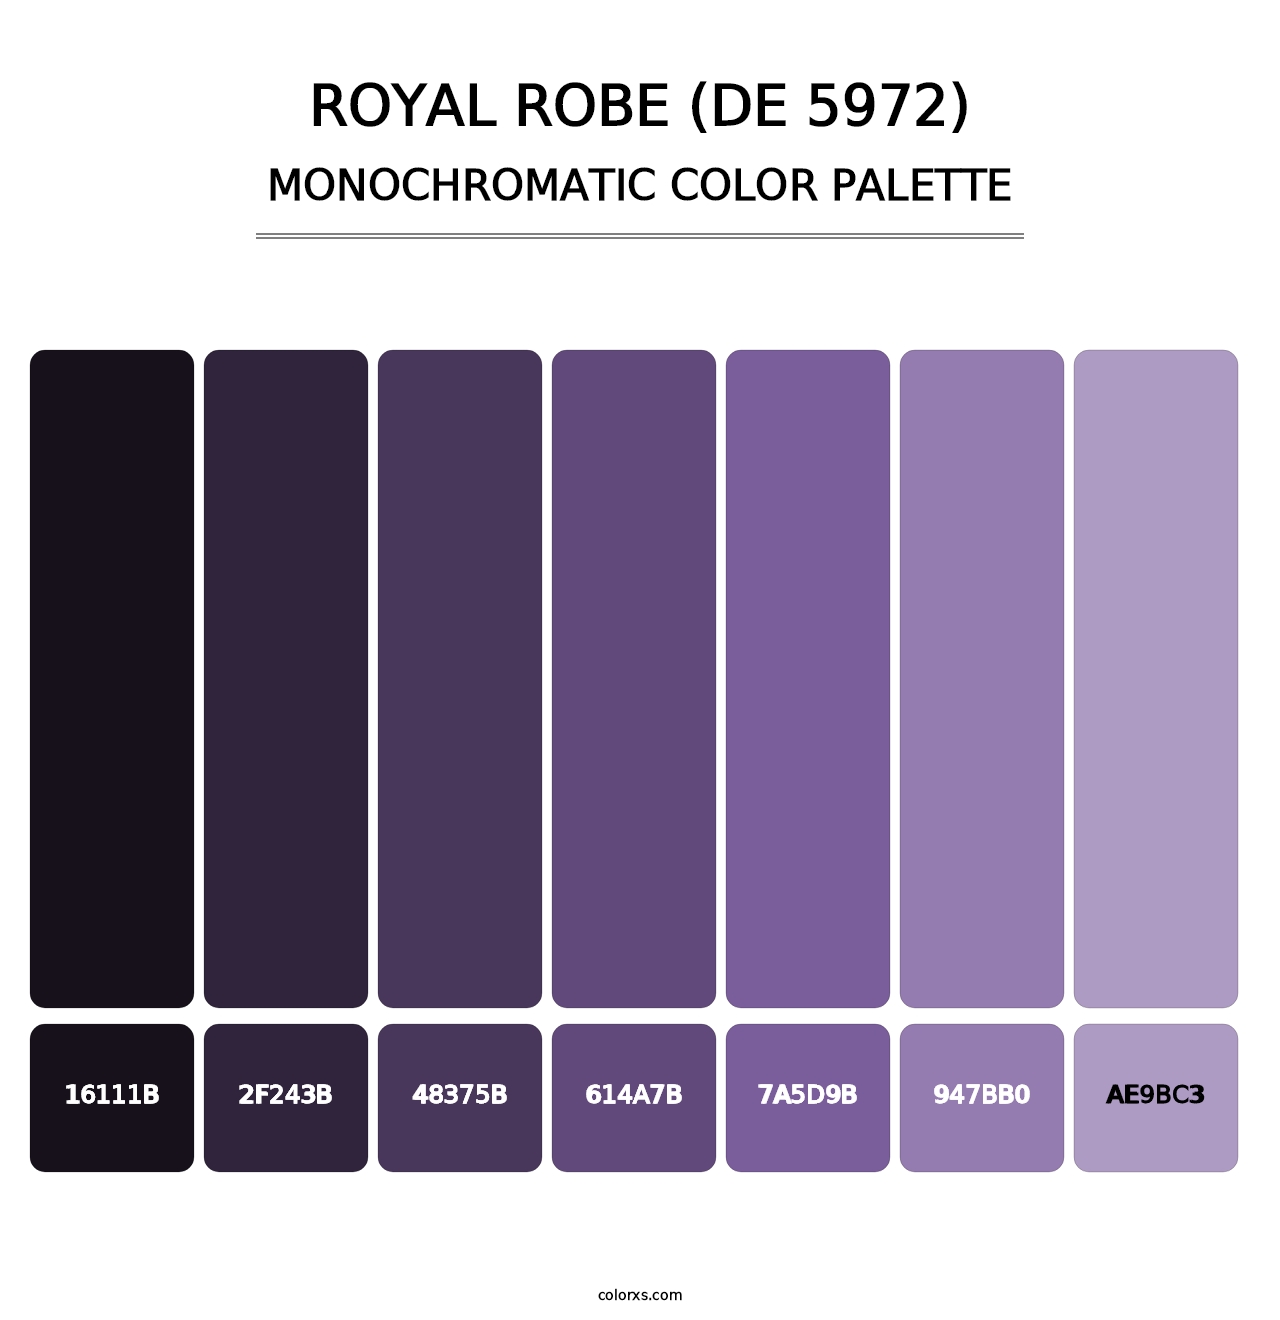 Royal Robe (DE 5972) - Monochromatic Color Palette